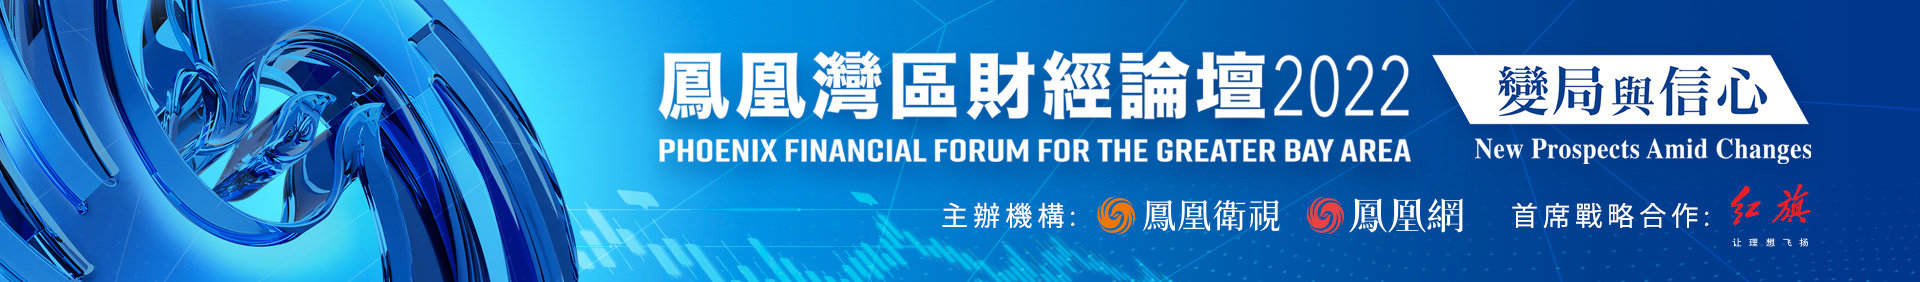 刘连舸：金融业要把握机遇服务大湾区新跨越 推动构建跨境金融发展新格局